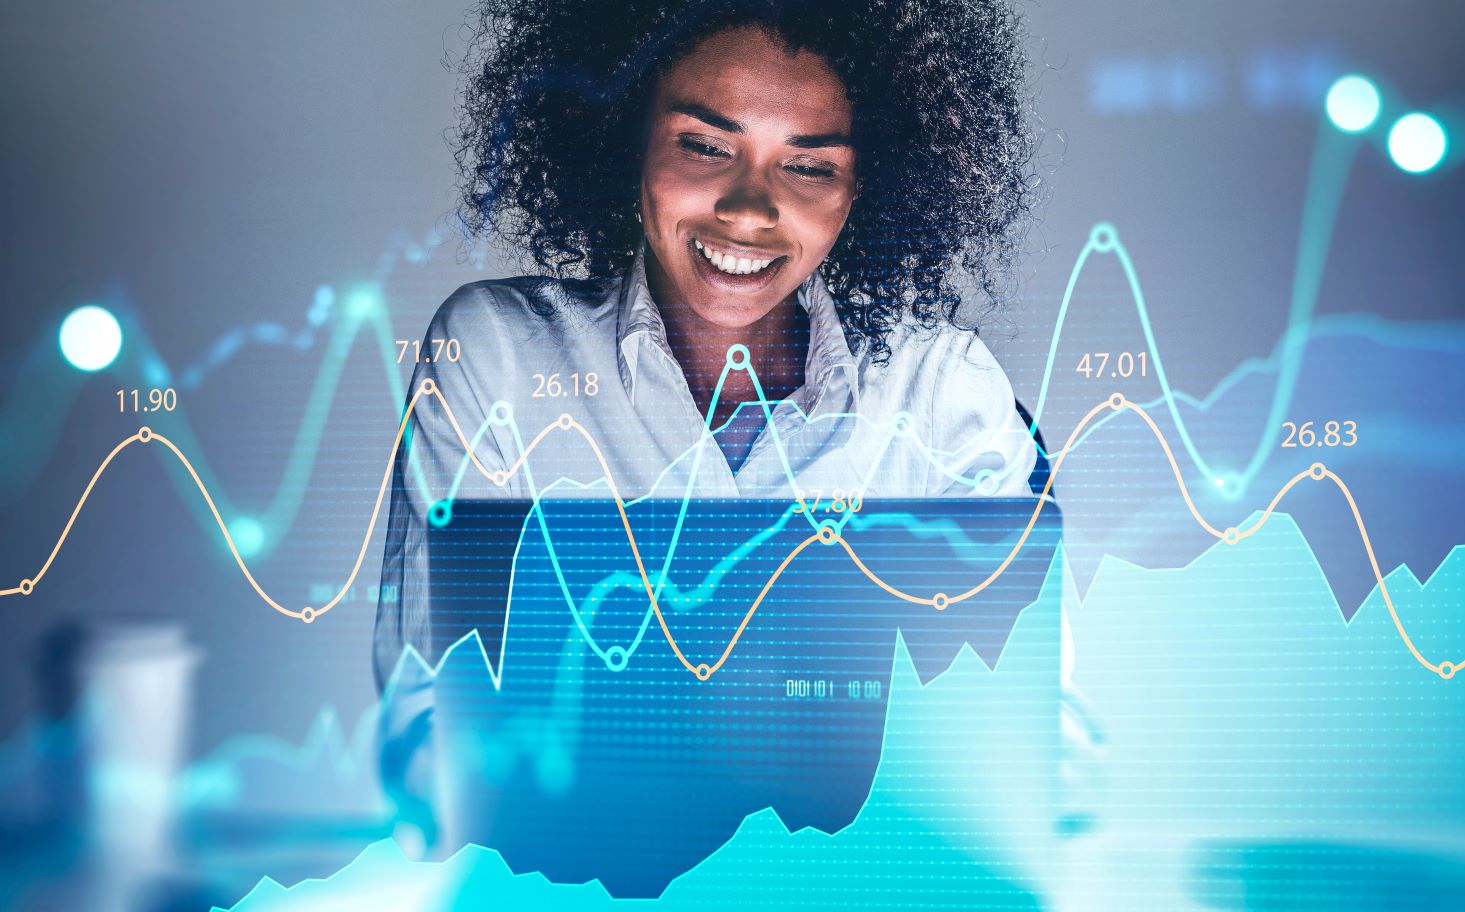 imagem ilustrativa do post, com uma mulher negra sorrindo ao mexer no computador com efeitos de gráficos em sua frente